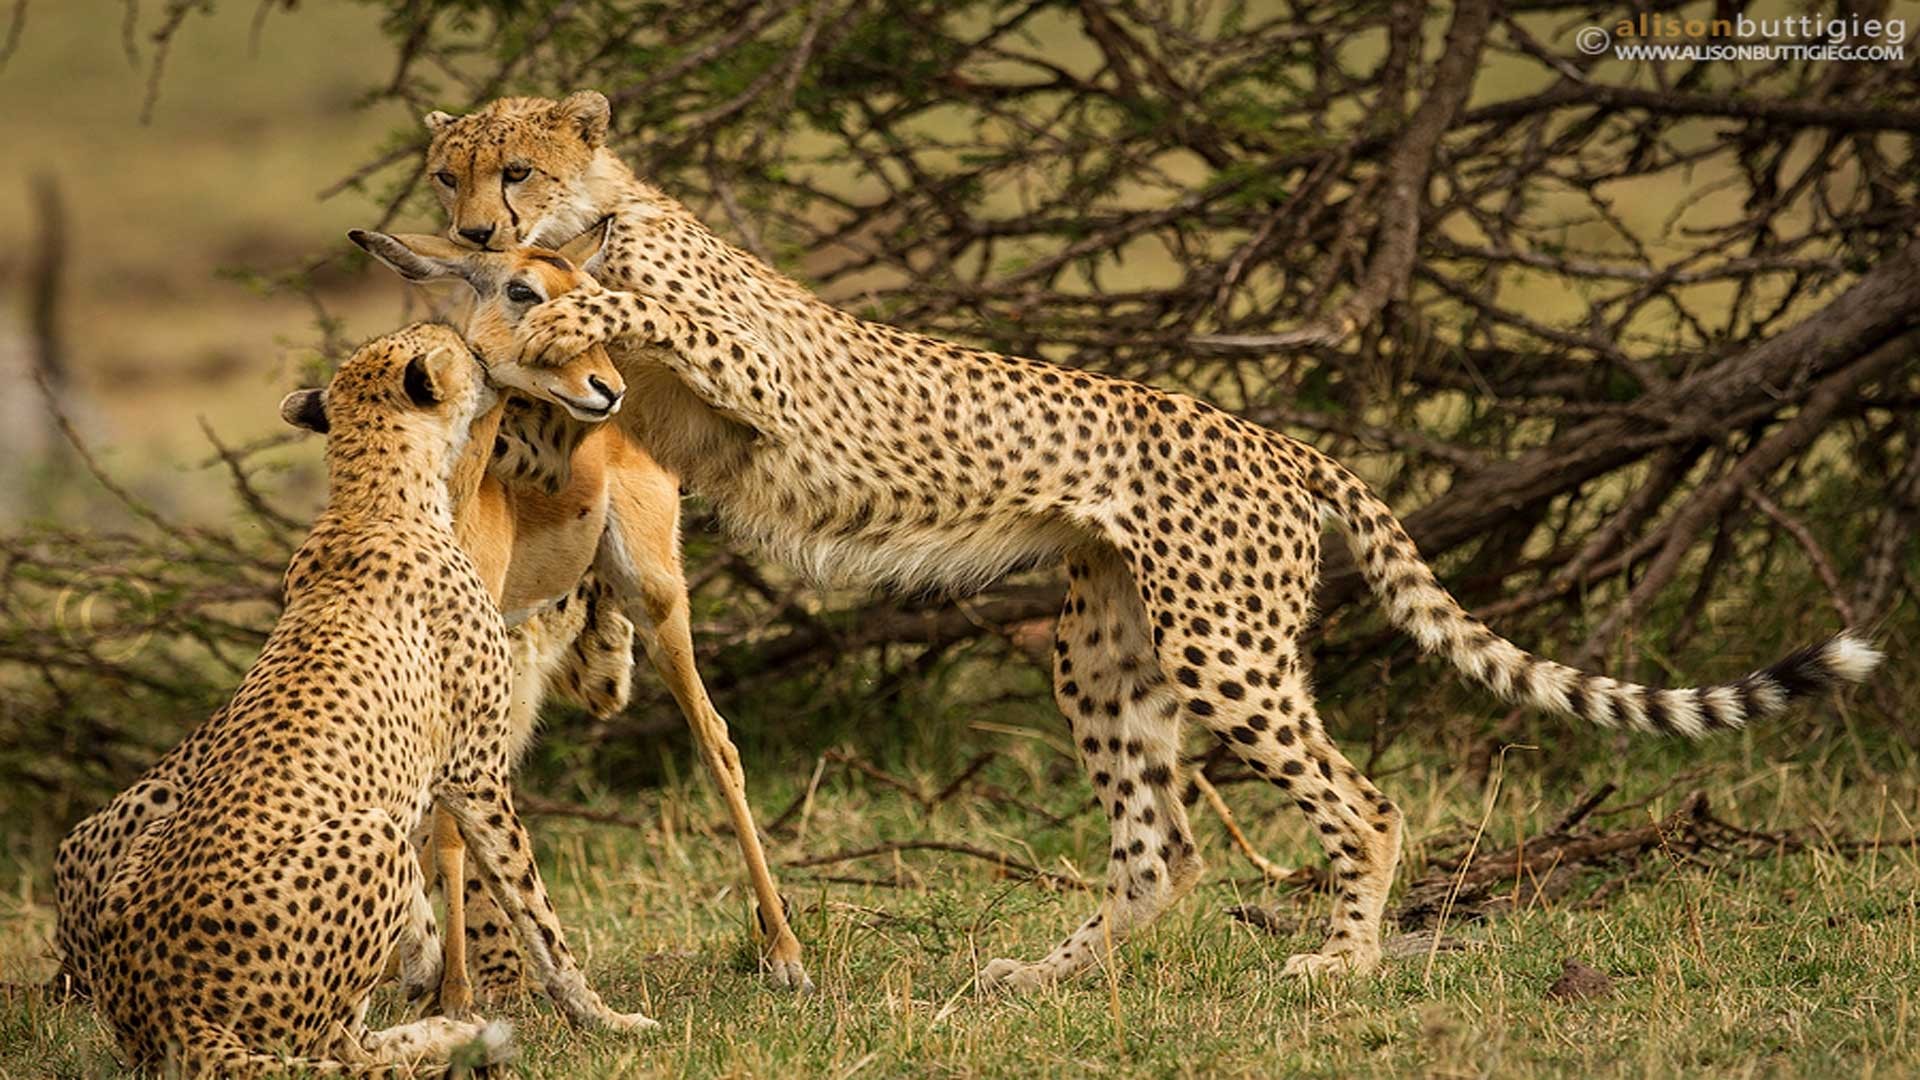 THE CHEETAH KILL(PHOTO SERIES) BY ALISON BUTTIGIEG | Cheetah ...